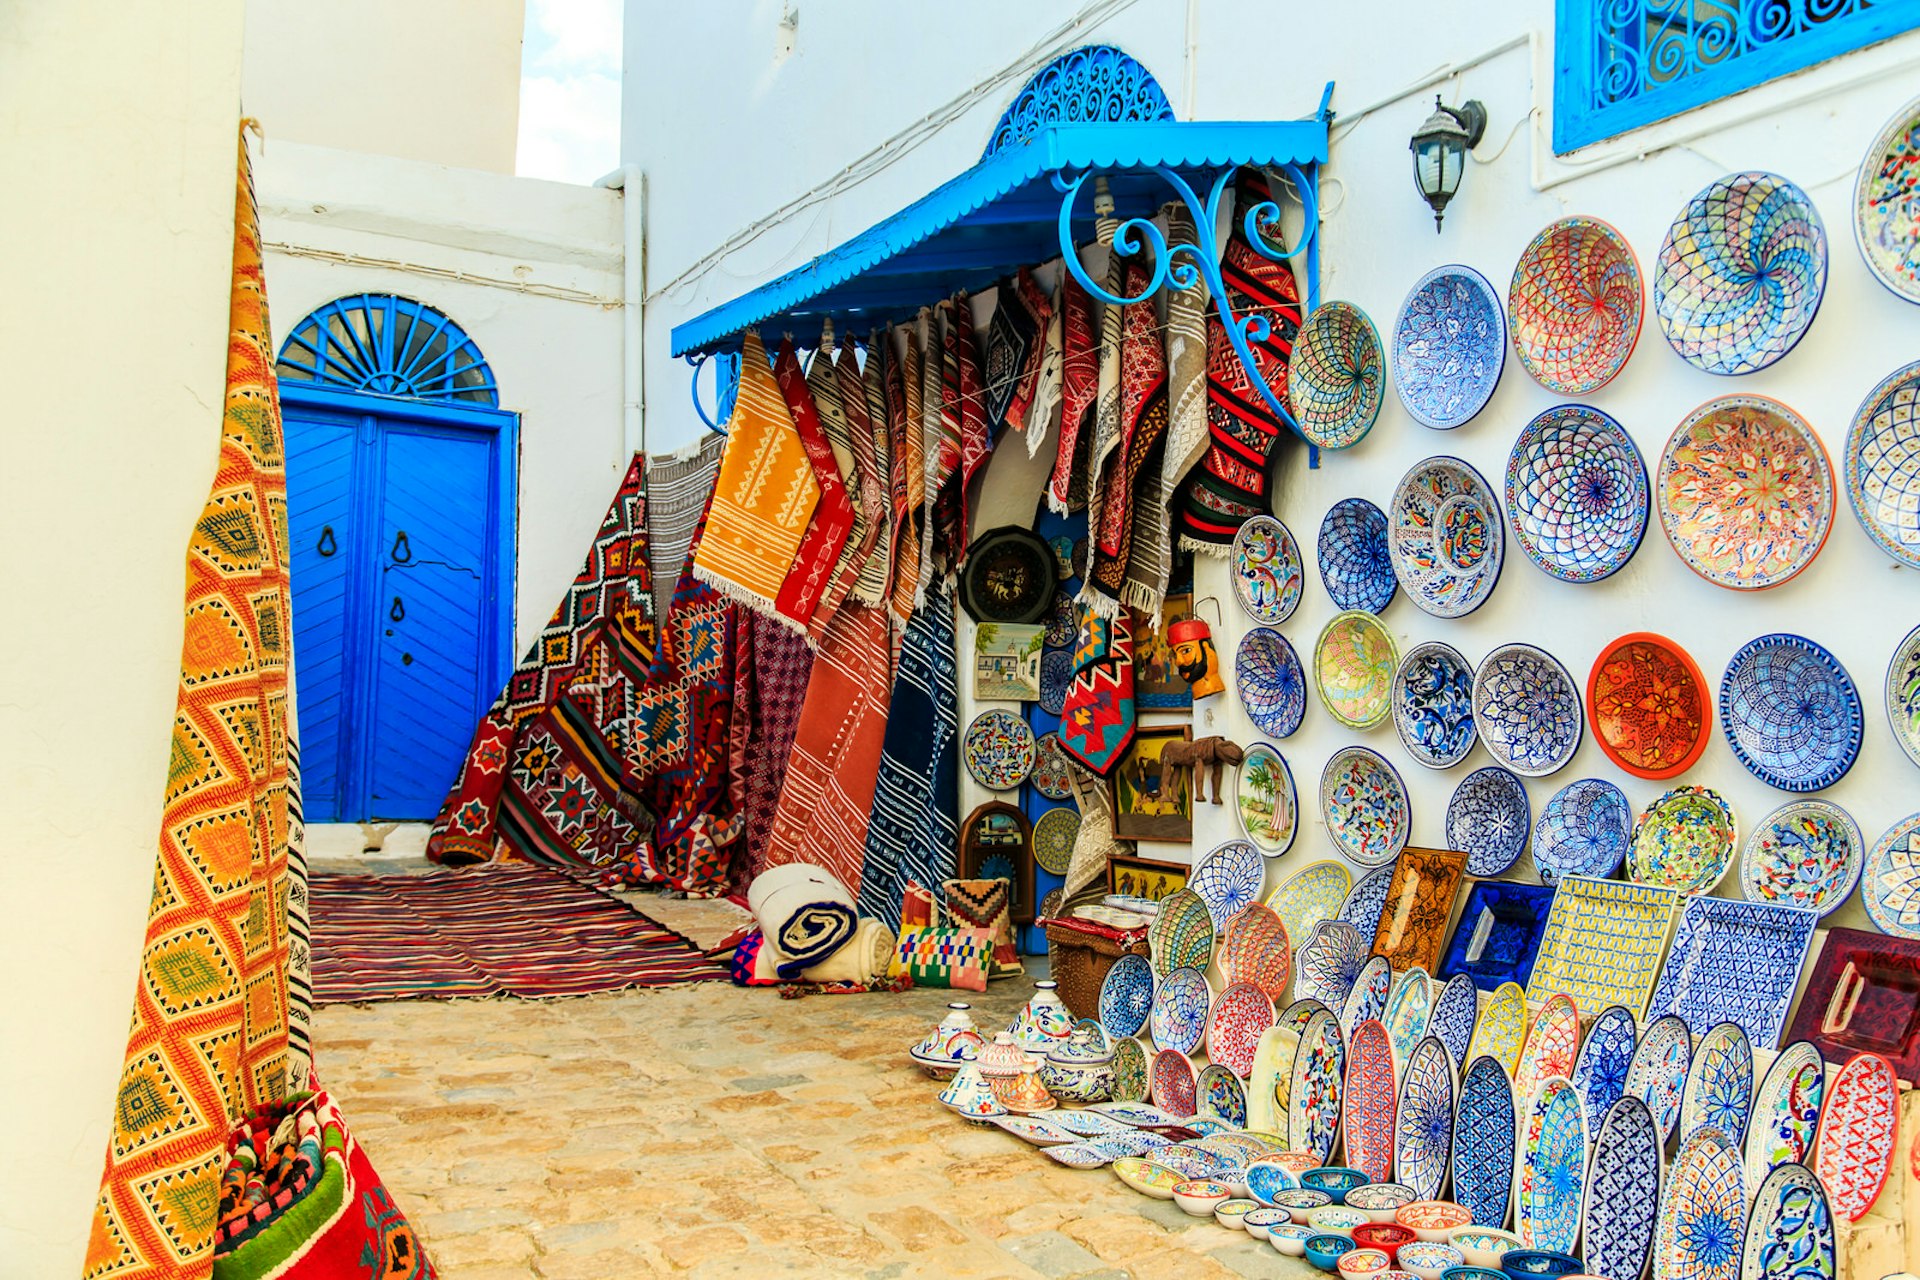 Souvenir earthenware and carpets in market in Sidi Bou Said, Tunis, Tunisia